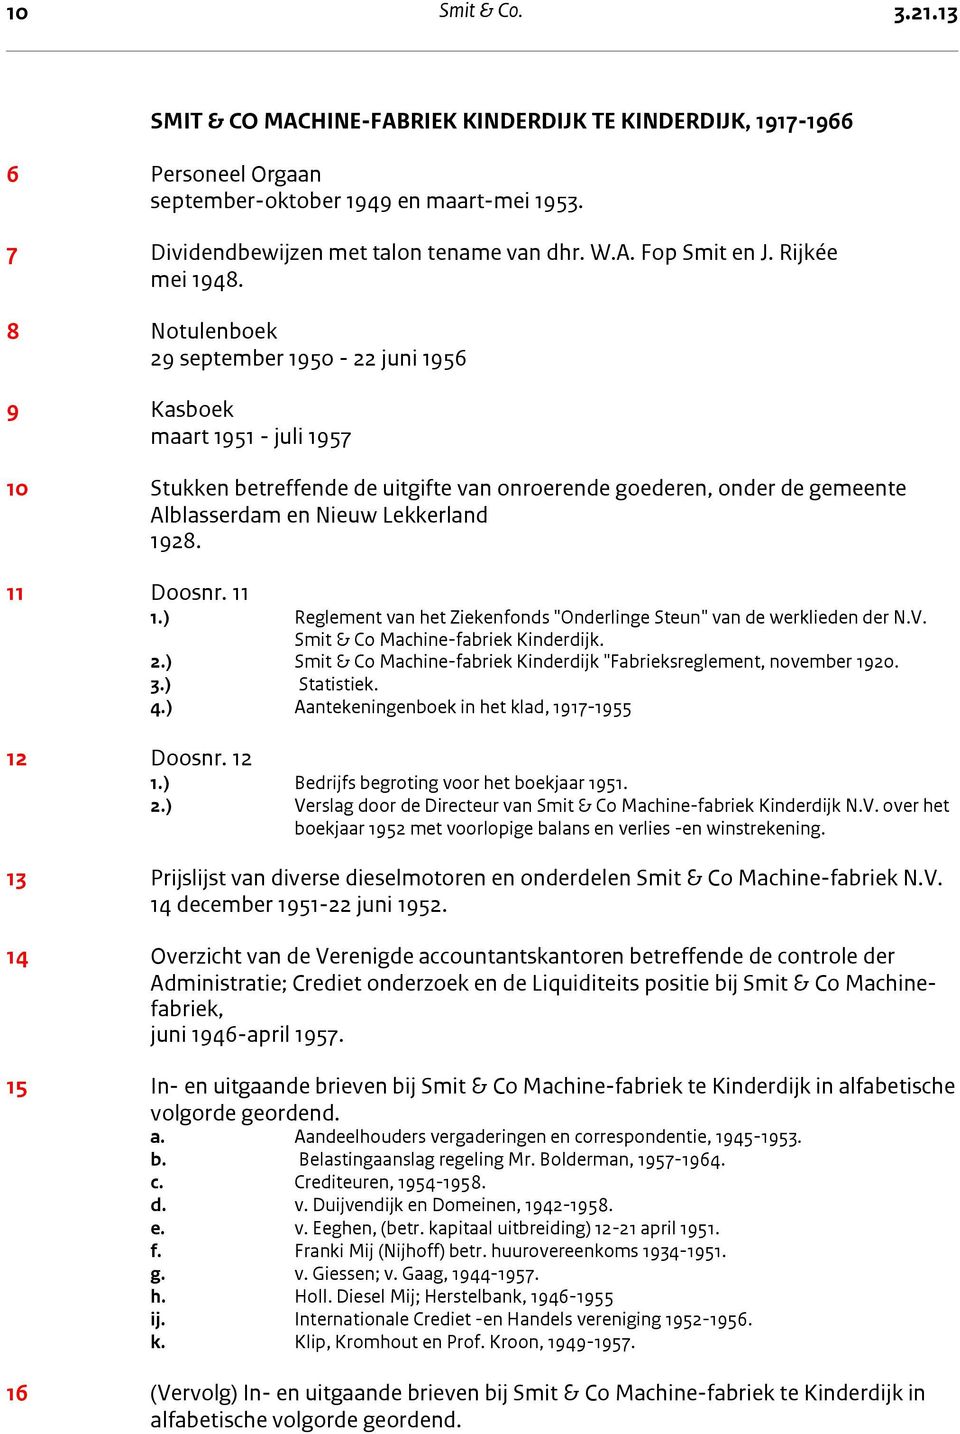 7 Dividendbewijzen met talon tename van dhr. W.A. Fop Smit en J. Rijkée mei 1948.